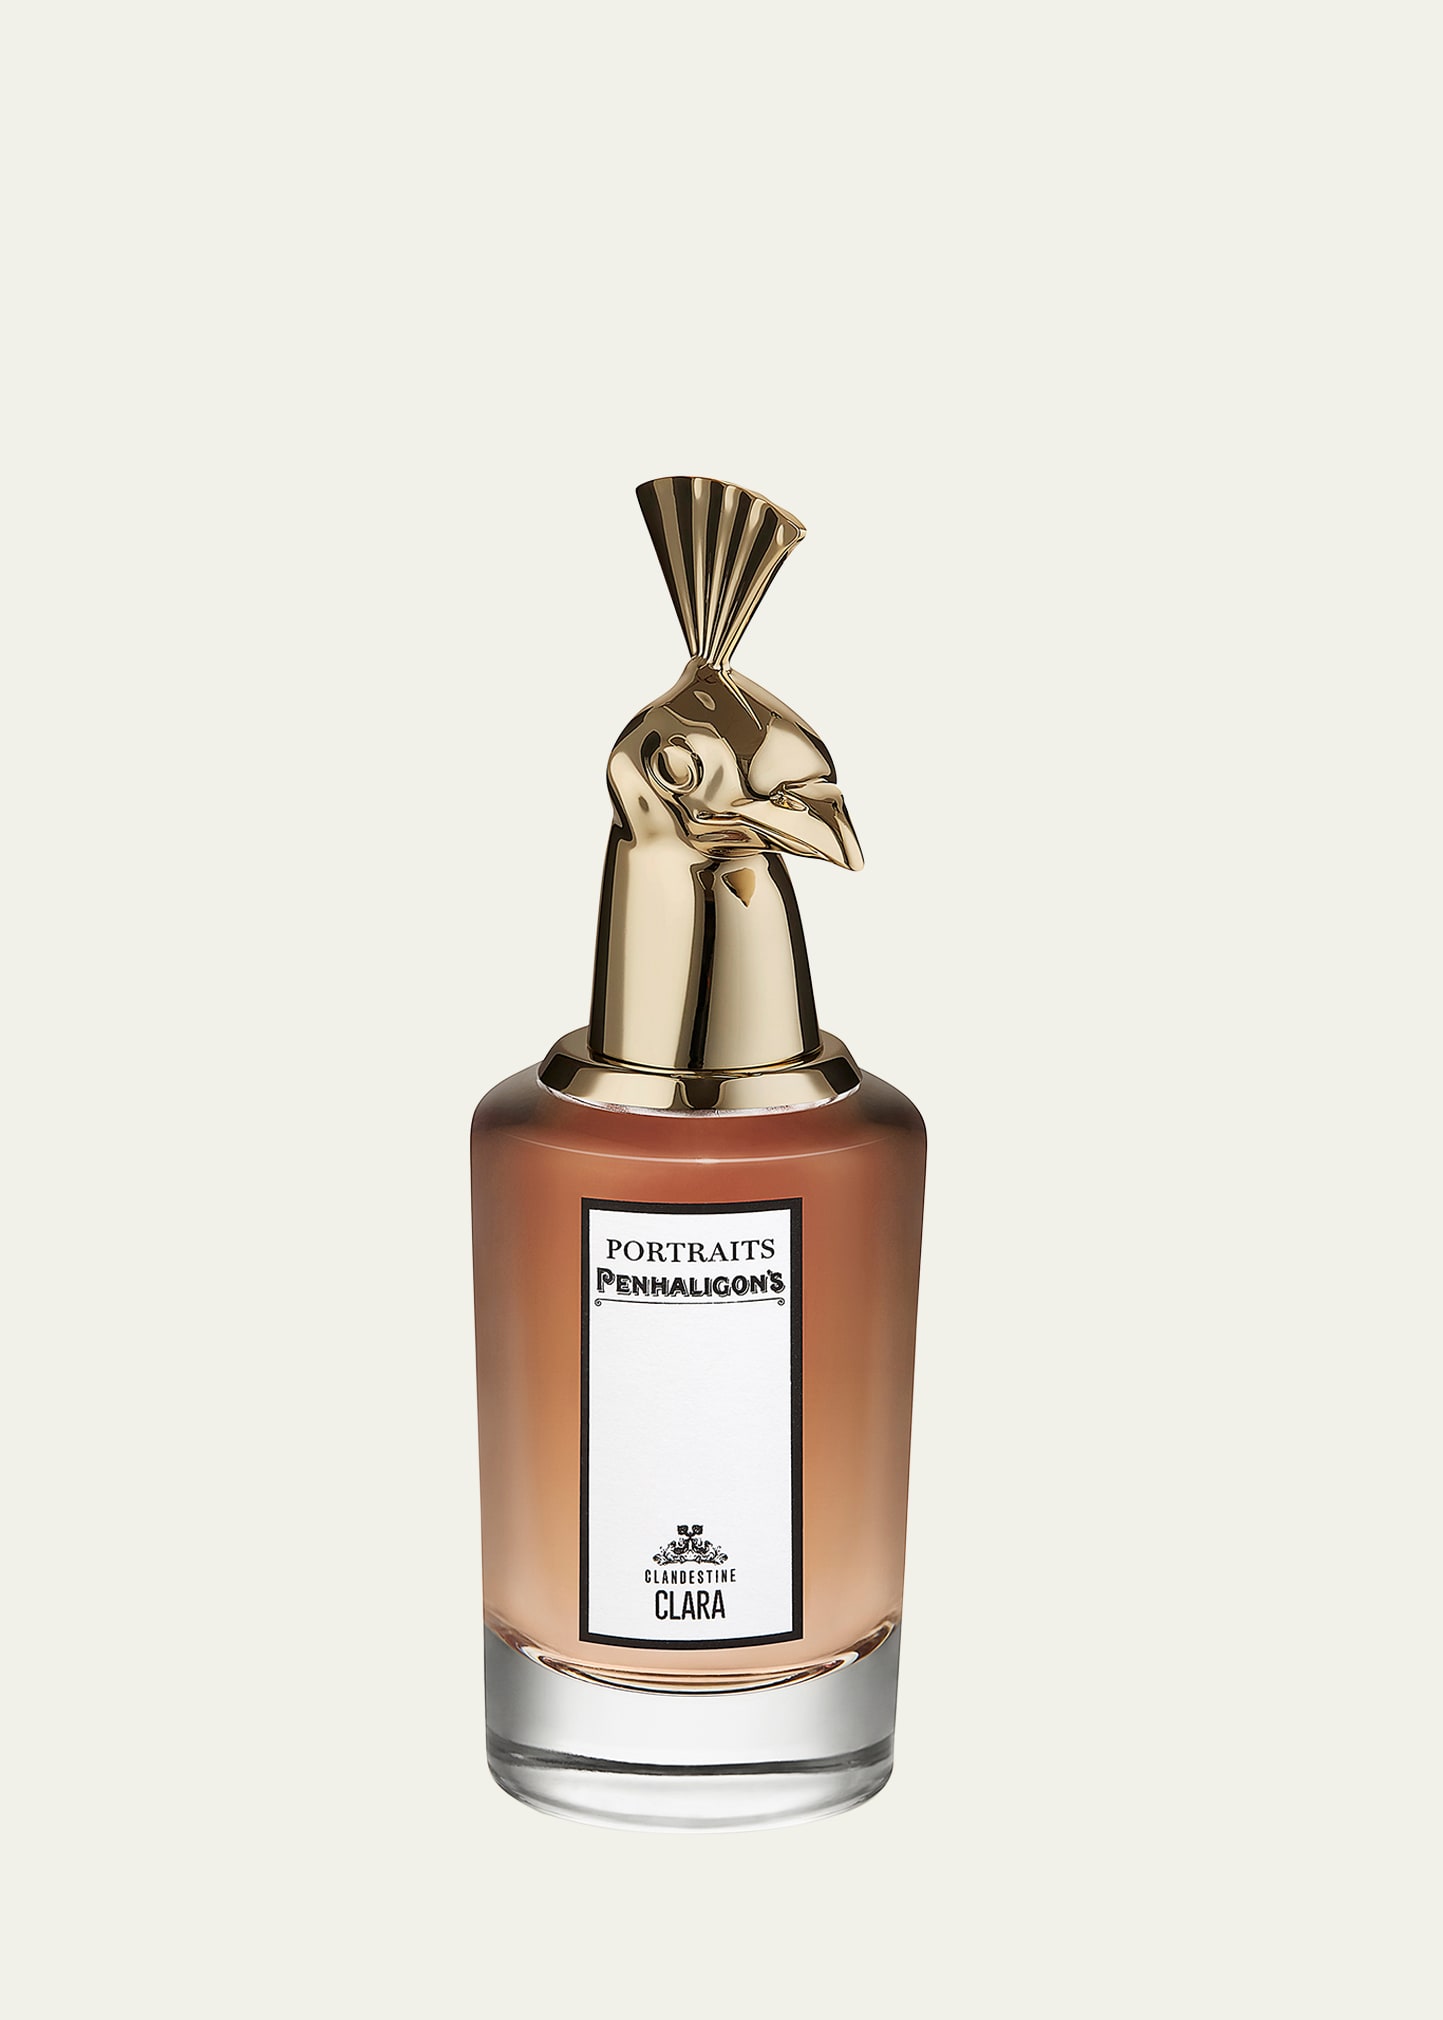 Clandestine Clara Eau de Parfum, 2.5 oz.